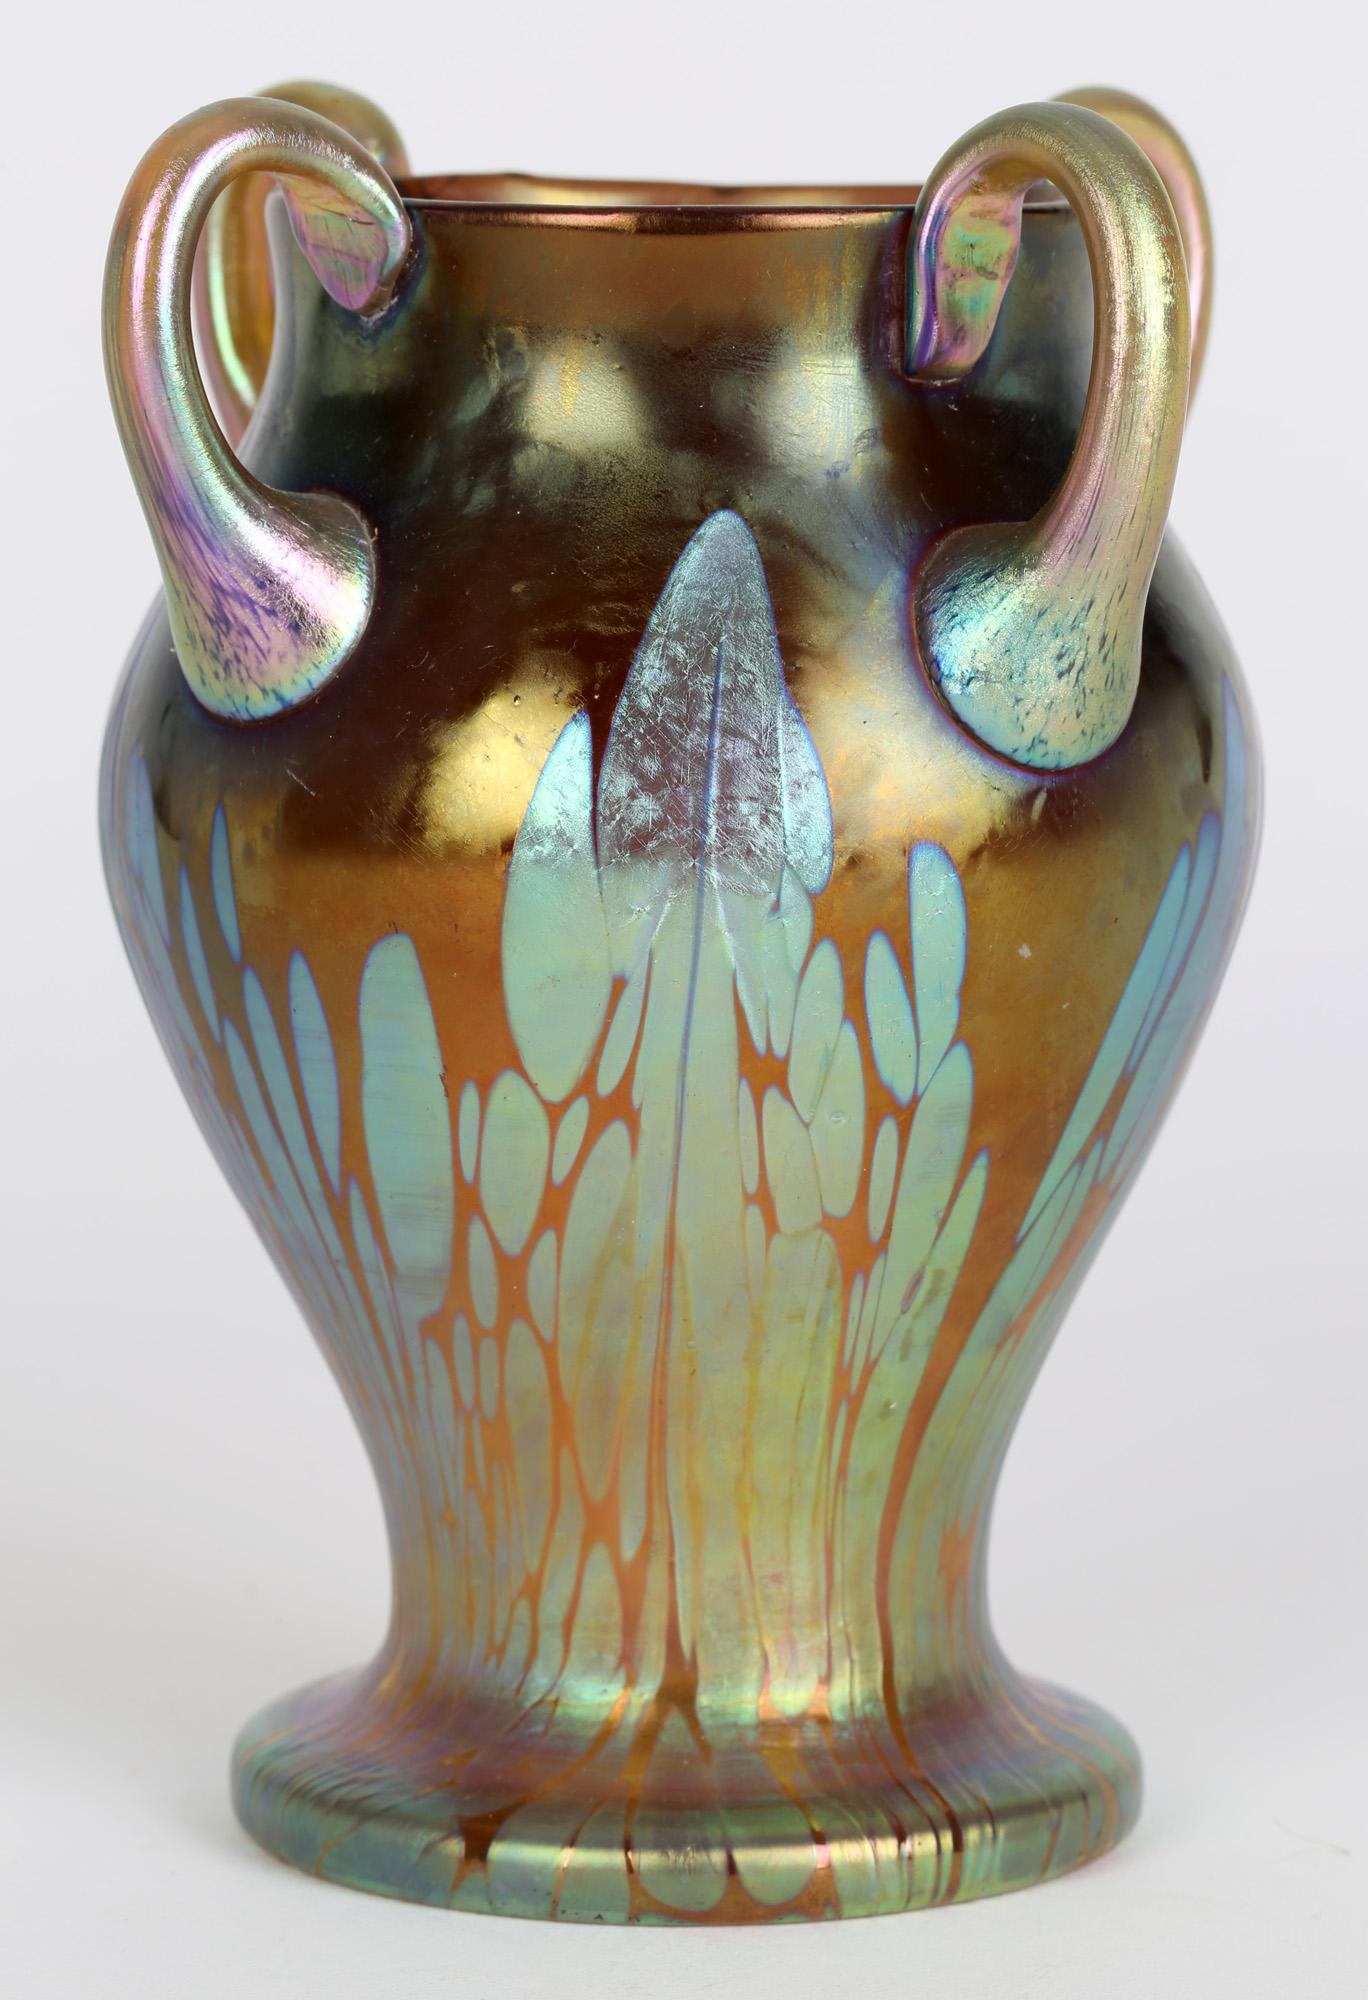 Exceptionnel et rare vase Loetz de Bohème de type Phénomène Genre 2/484 (également connu sous le nom de Médicis) datant d'environ 1902. Ce magnifique vase repose sur un pied arrondi et étalé, une taille étroite et un corps arrondi et bulbeux avec